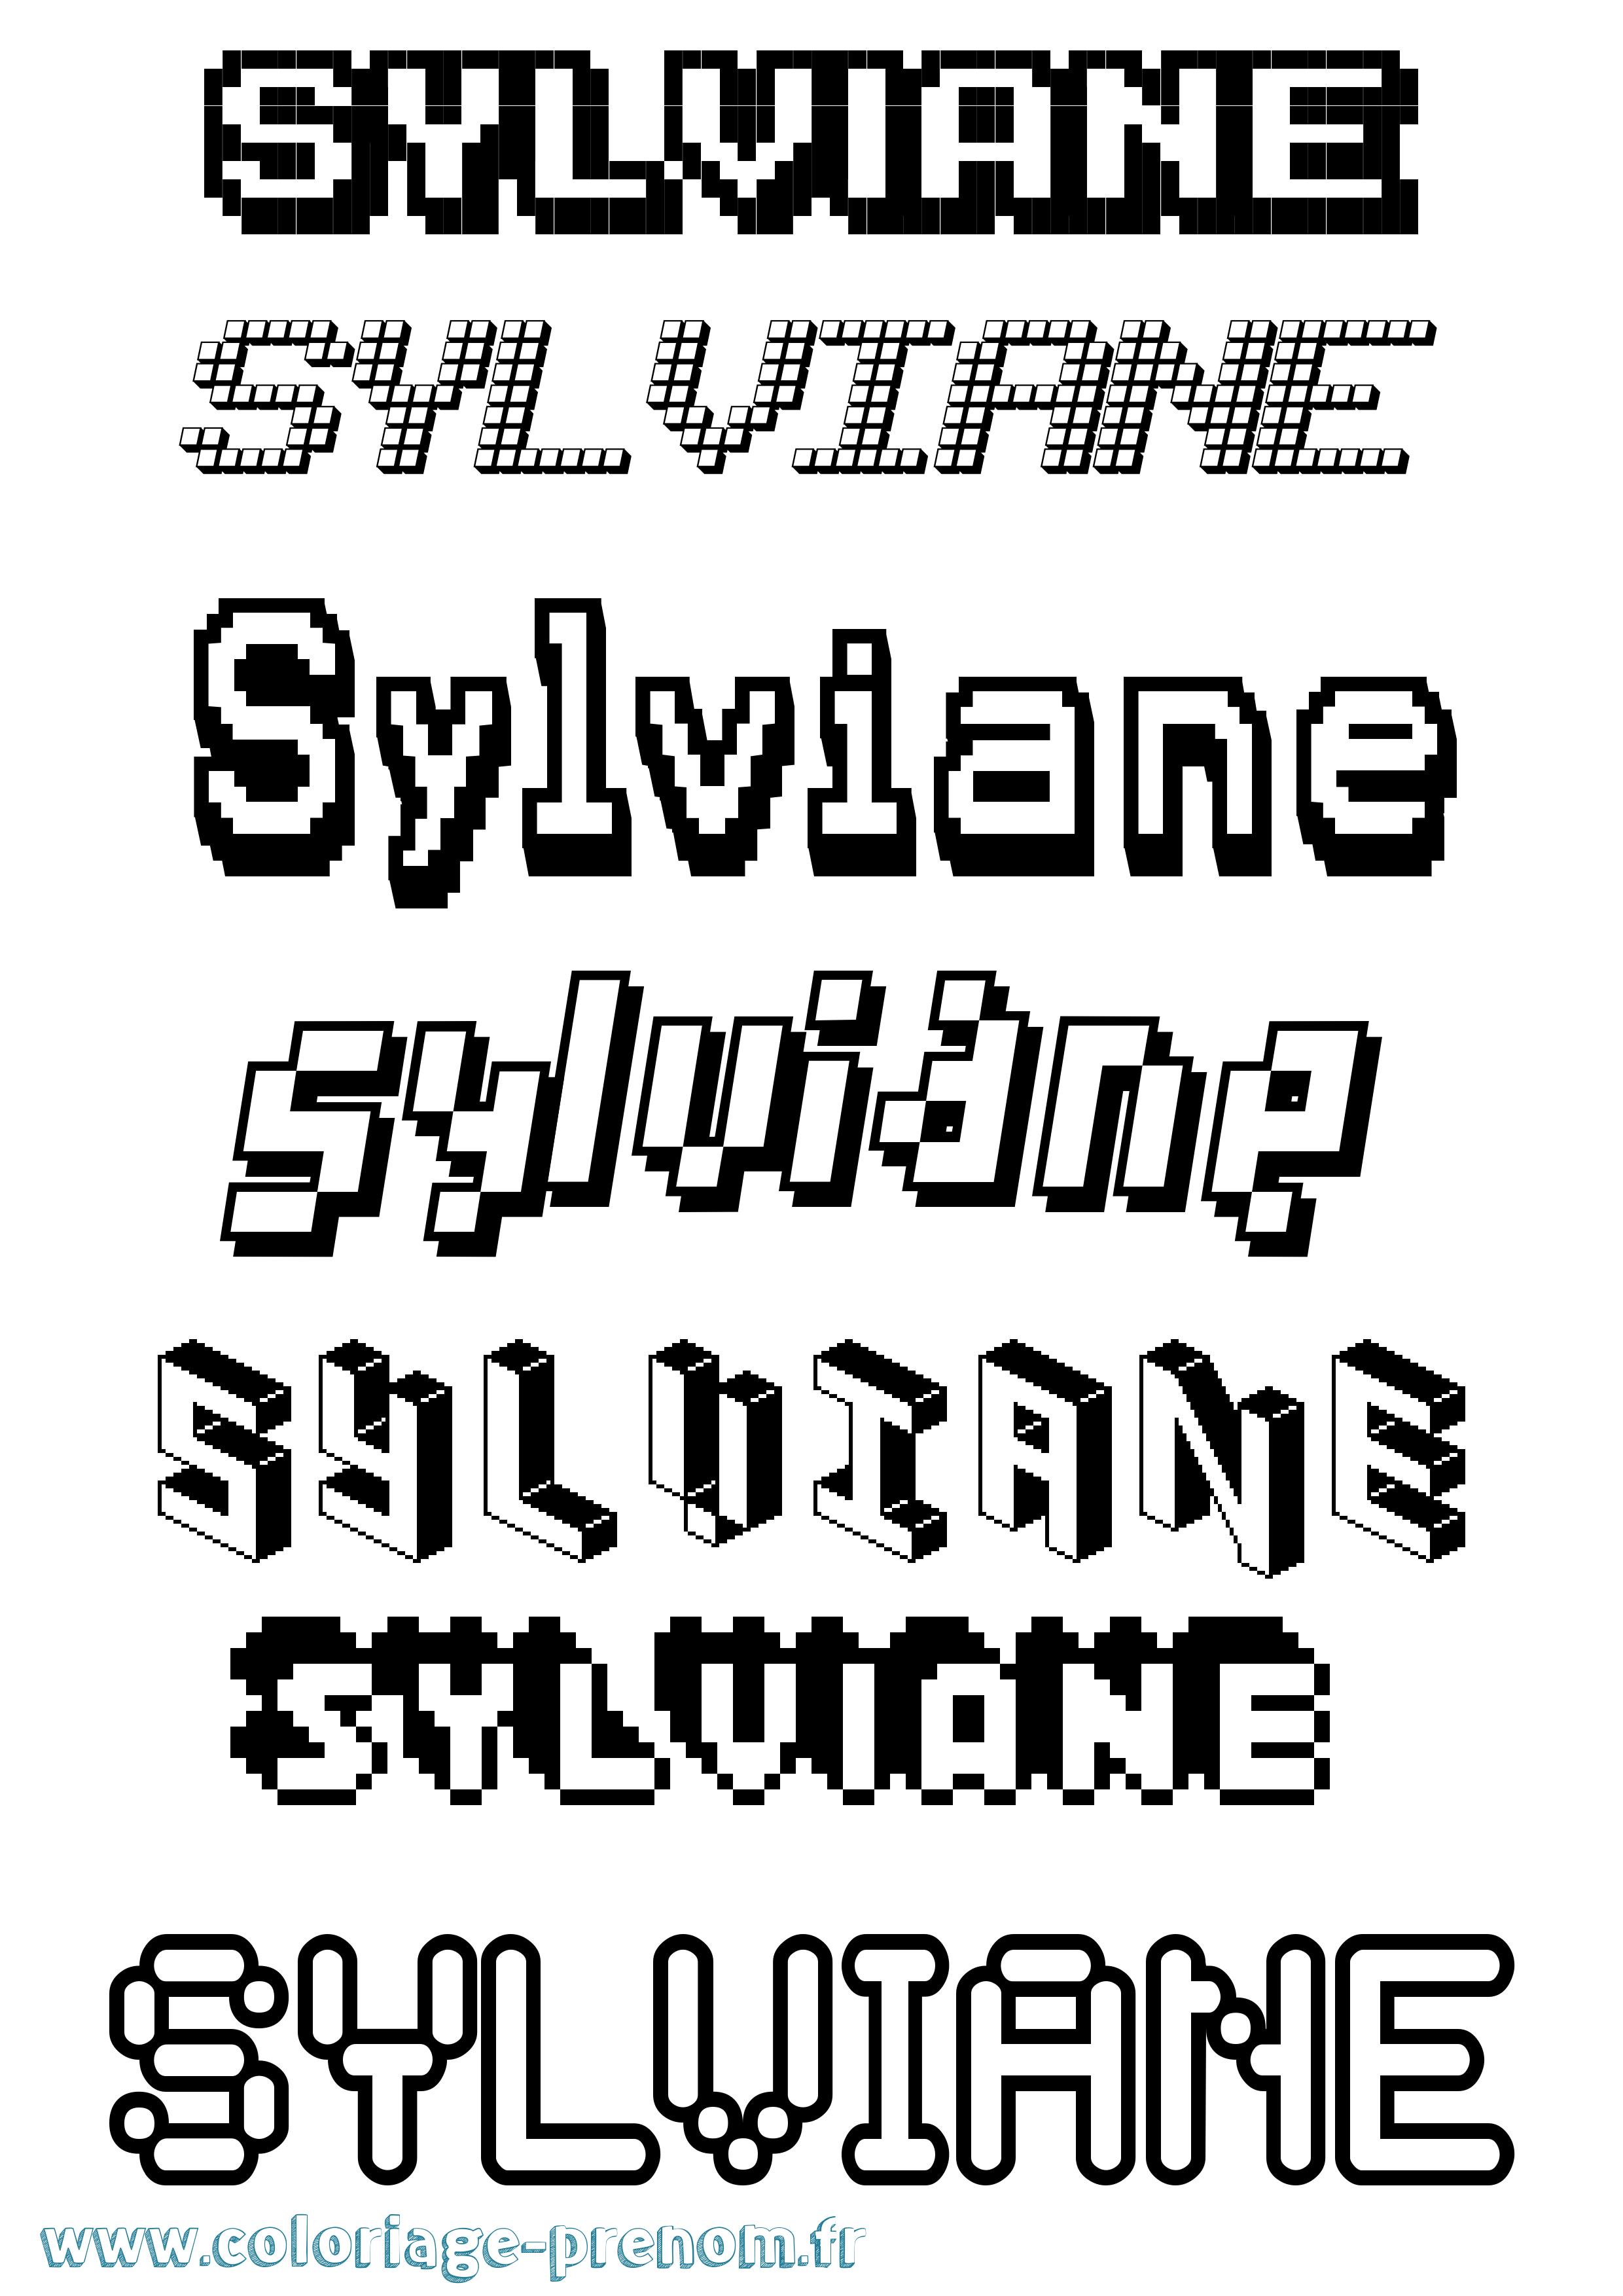 Coloriage prénom Sylviane Pixel